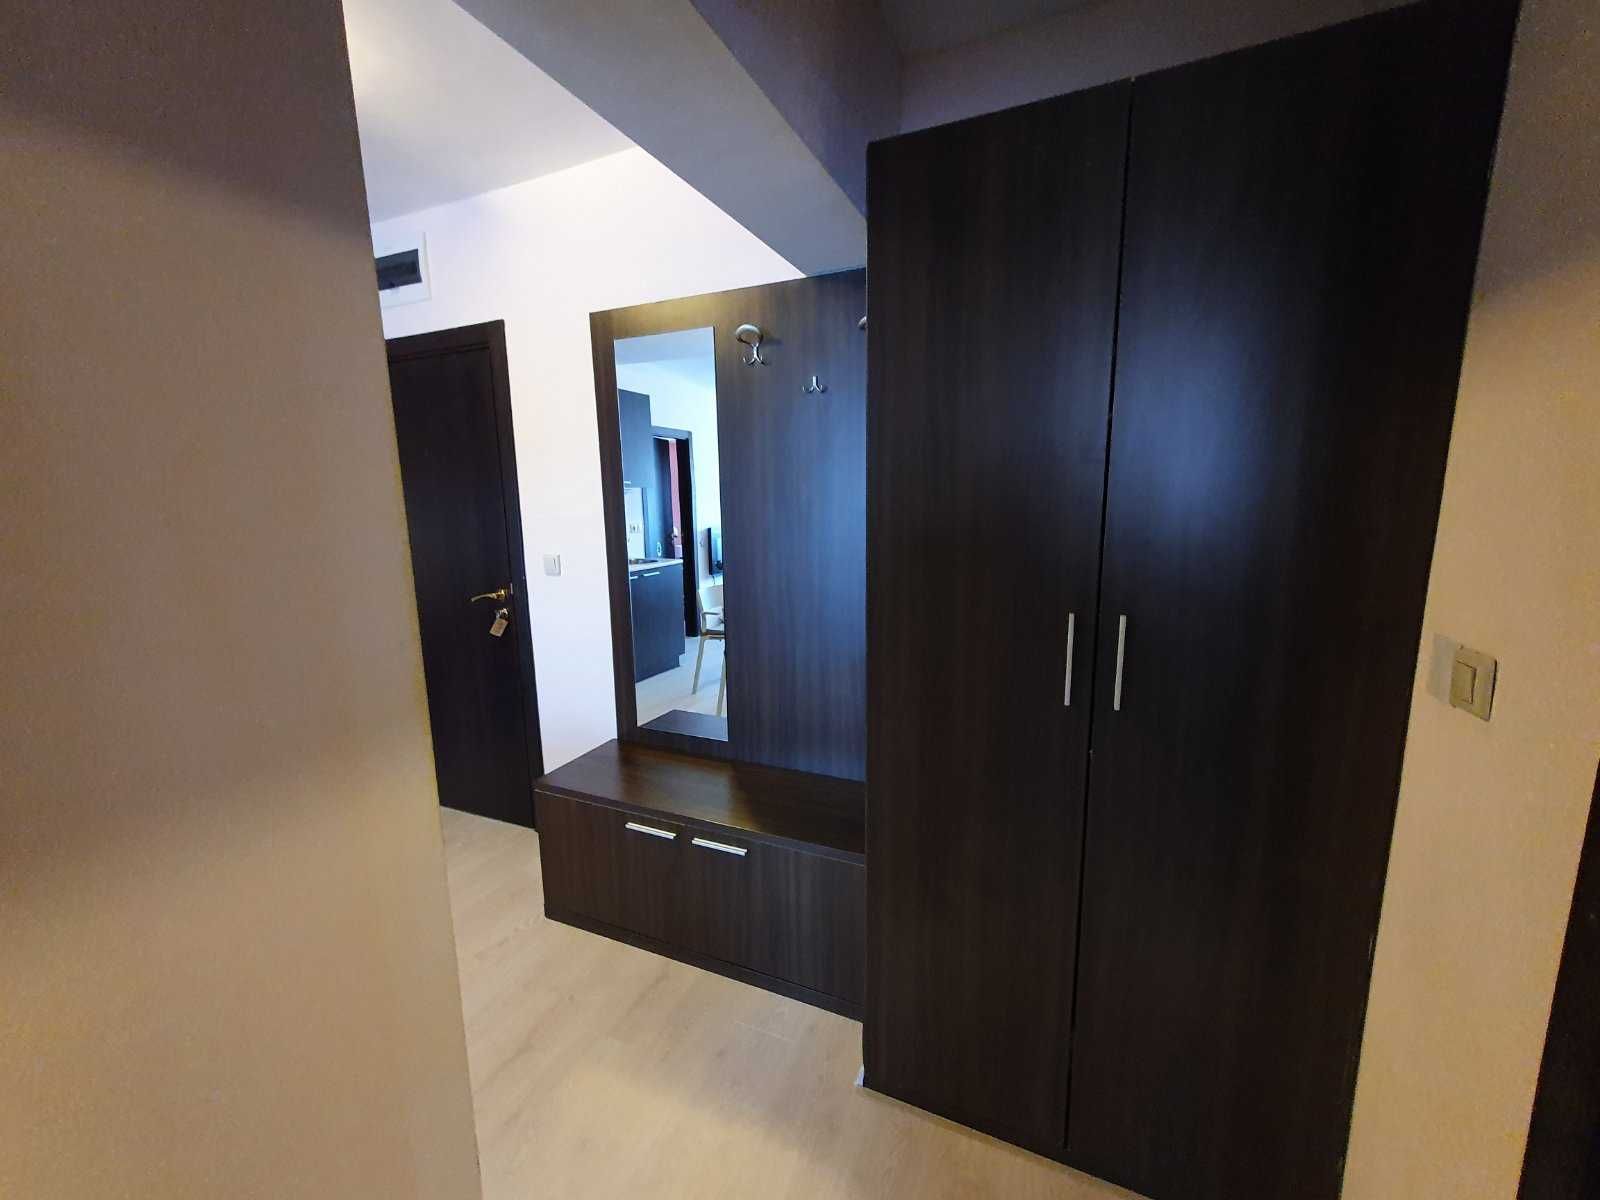 Просторен тристаен апартамент за продажба до кабинковия лифт в Банско